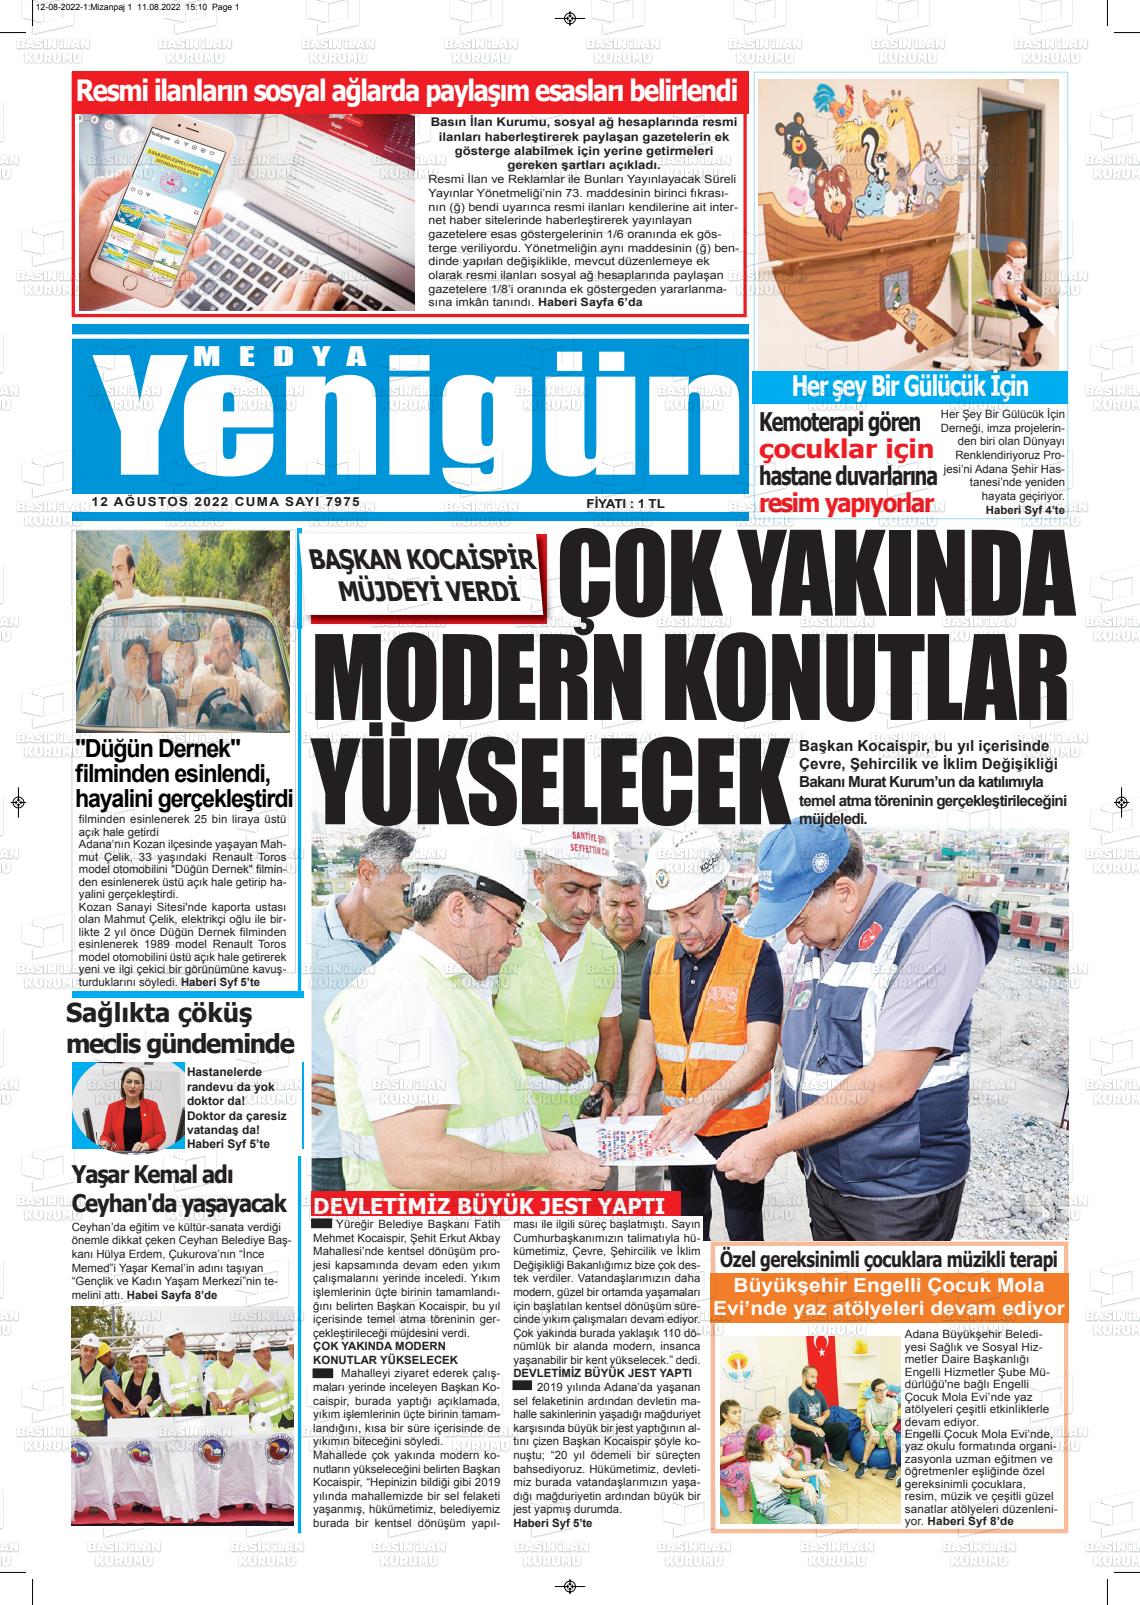 12 Ağustos 2022 Medya Yenigün Gazete Manşeti